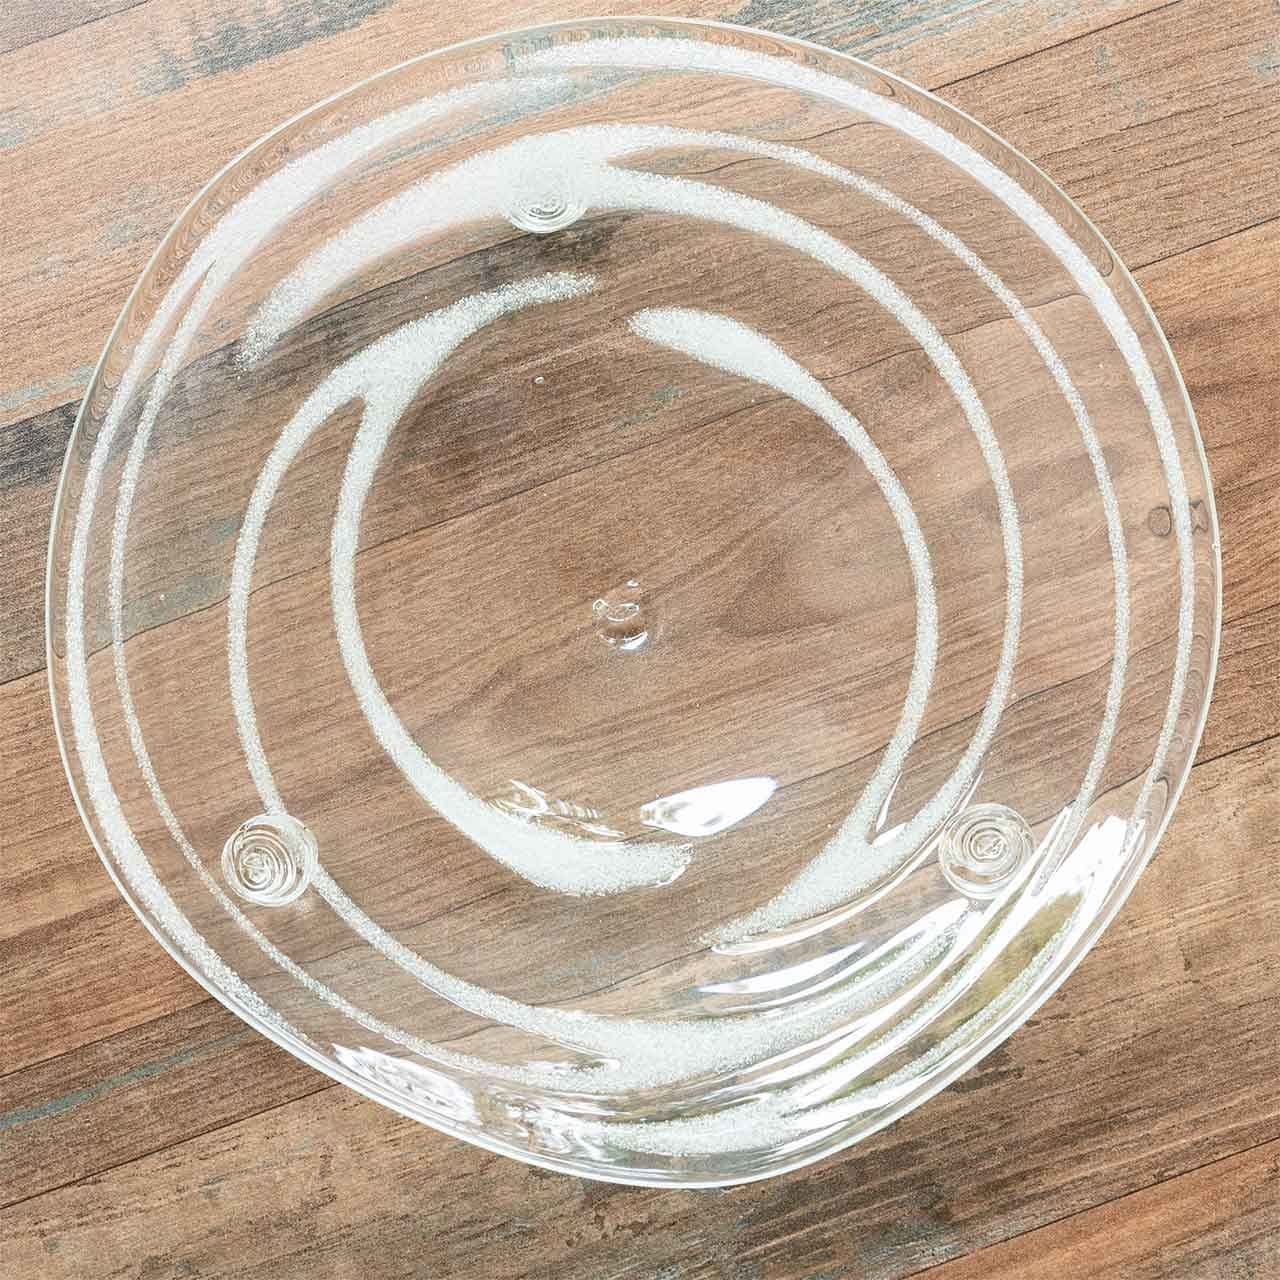 ガラス工房ロブスト 三足皿の泡